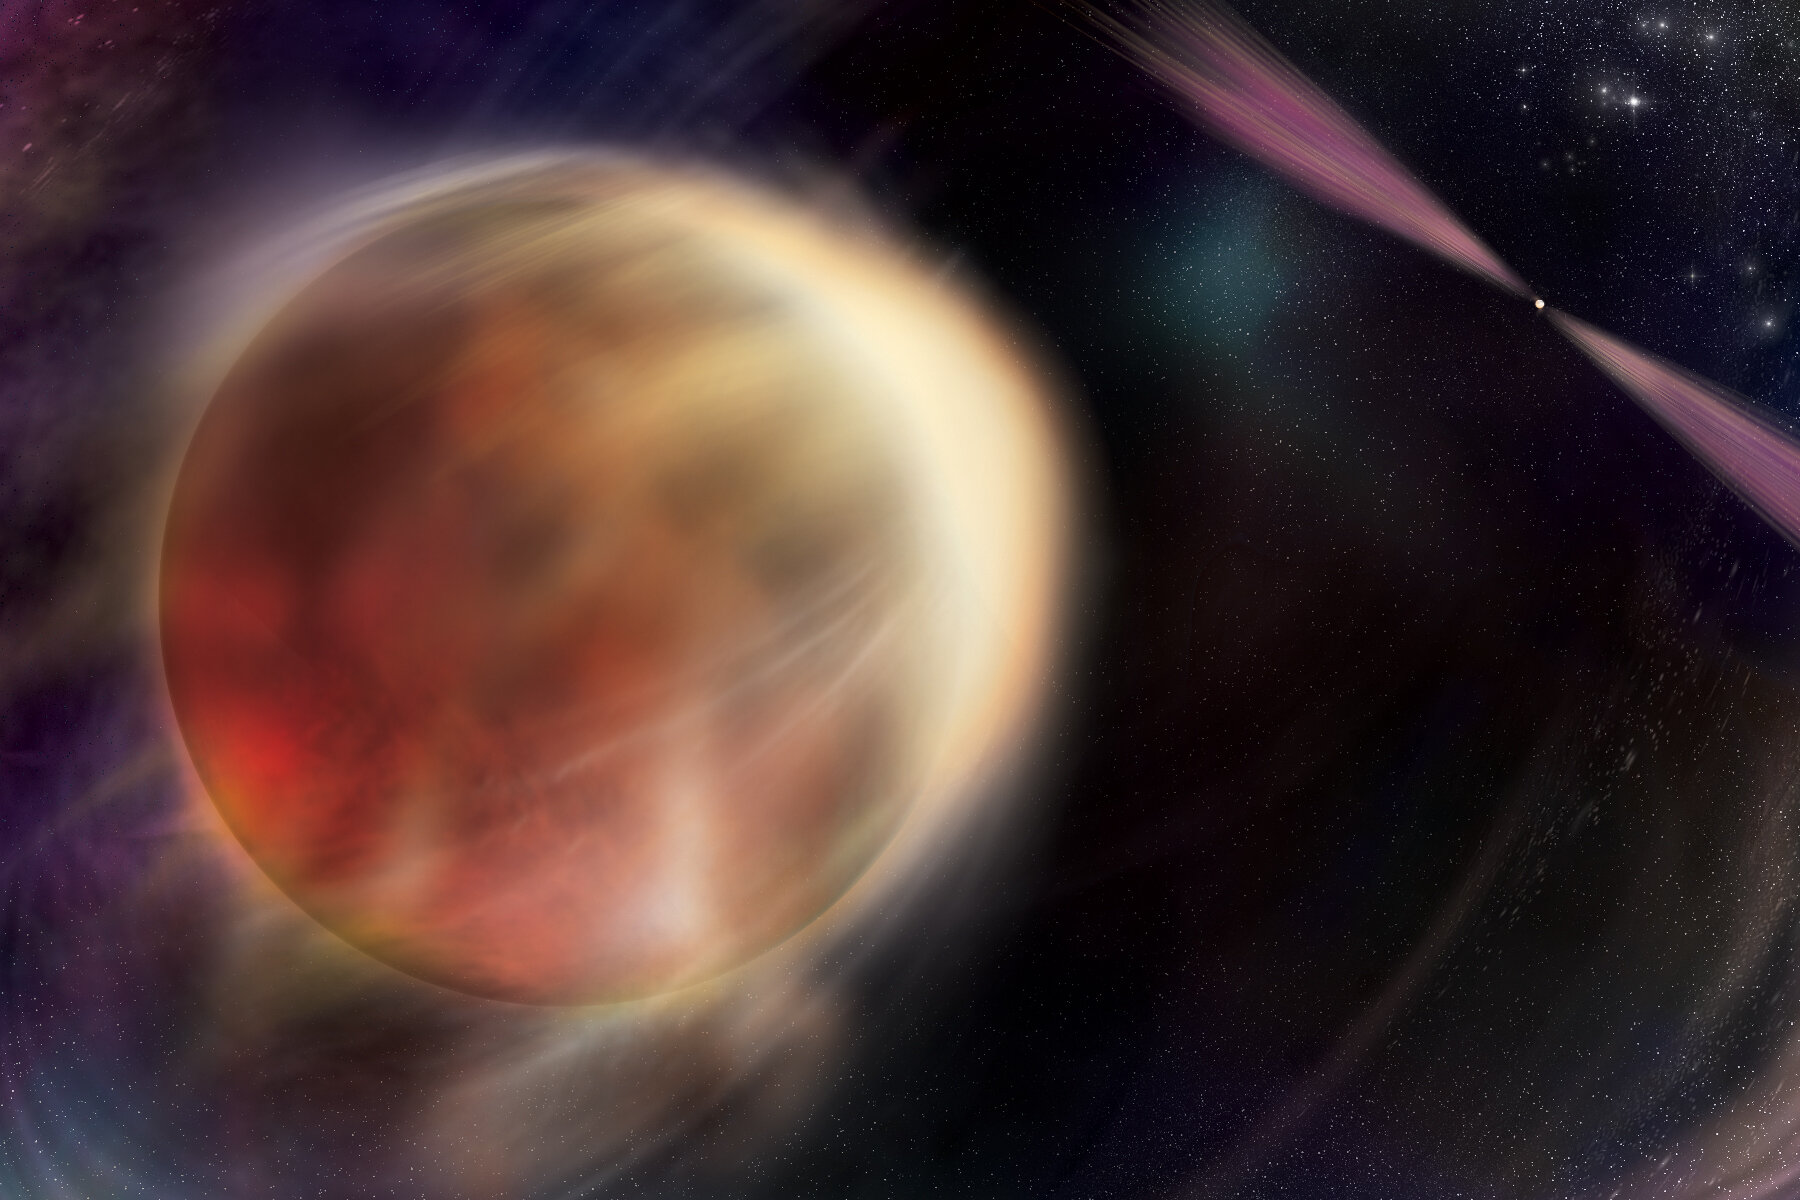 En esta ilustración, una estrella en órbita comienza a eclipsar a su pareja, un remanente estelar superdenso que gira rápidamente llamado púlsar. El púlsar emite haces de luz de múltiples longitudes de onda que rotan dentro y fuera de la vista y producen flujos de salida que calientan el lado frontal de la estrella, expulsando material y erosionando a su pareja. Crédito: NASA/Universidad Estatal de Sonoma, Aurore Simonnet